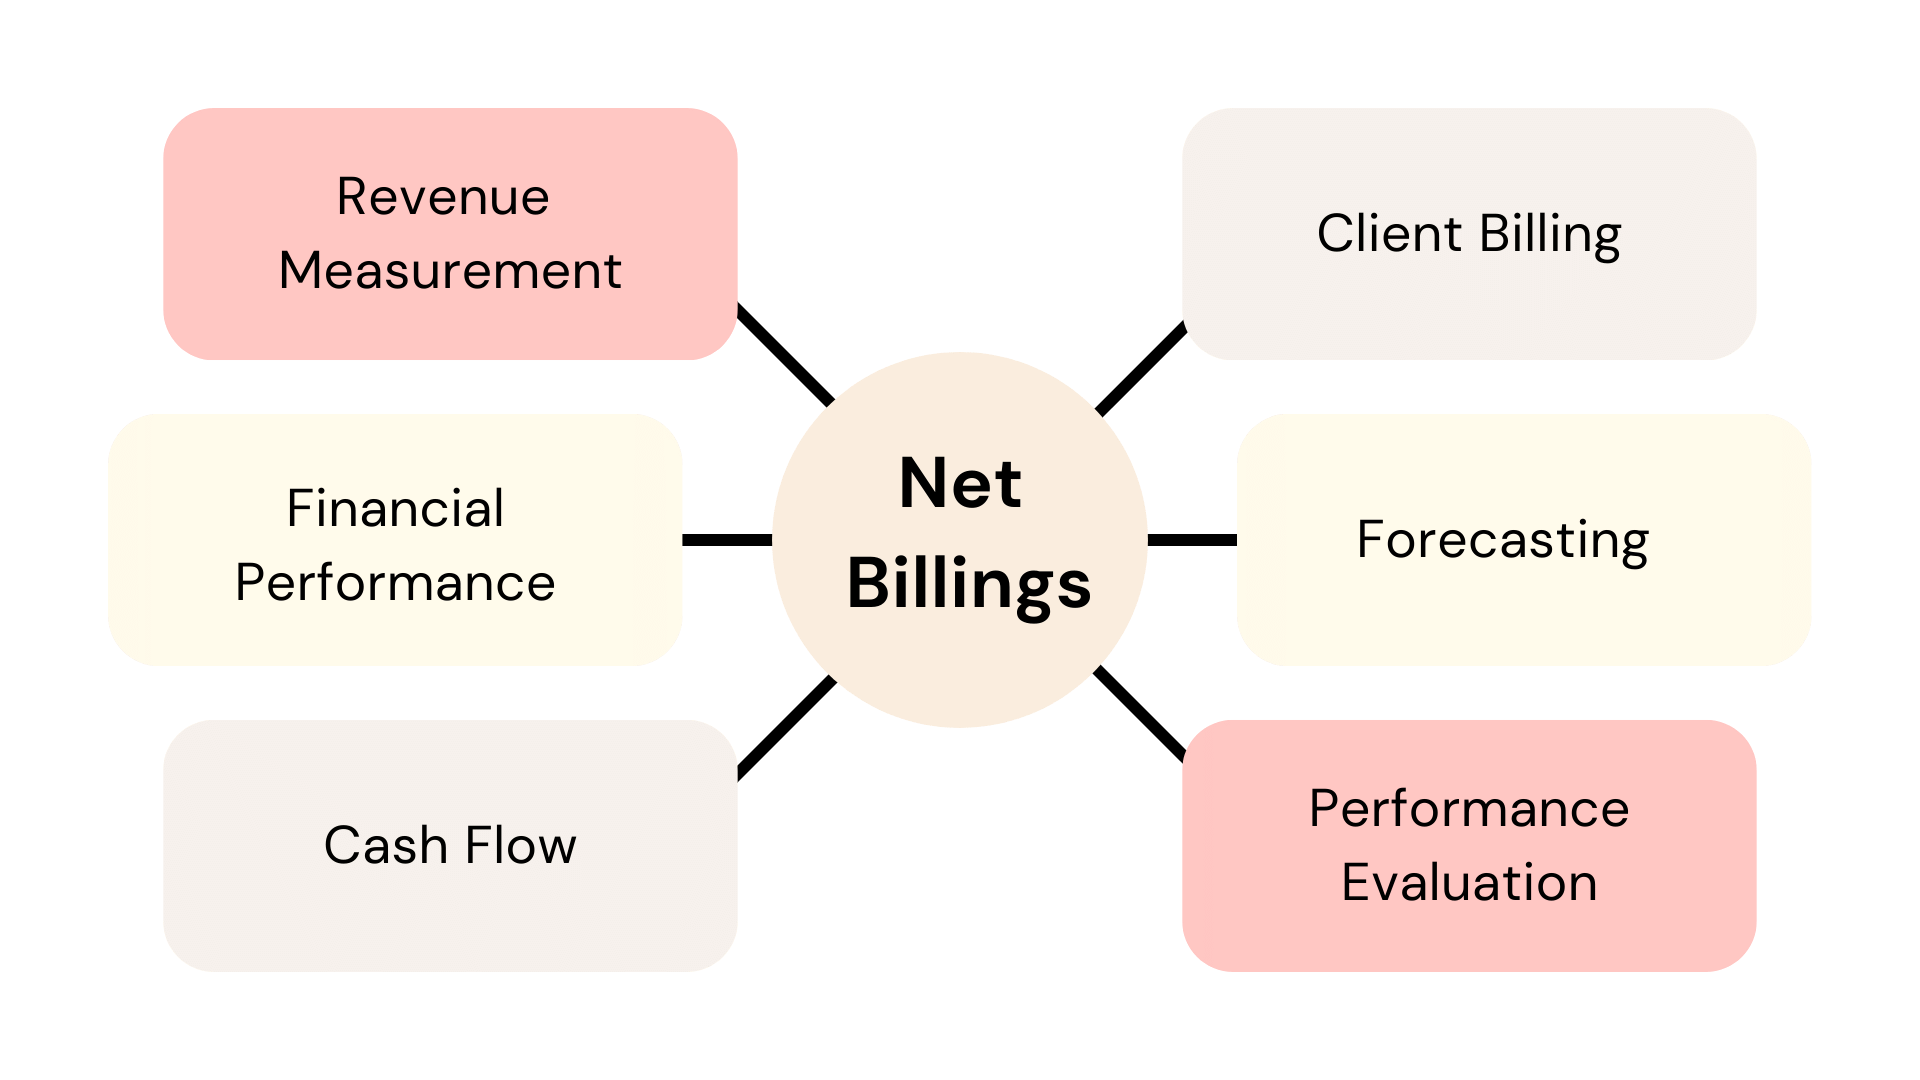 Net billings